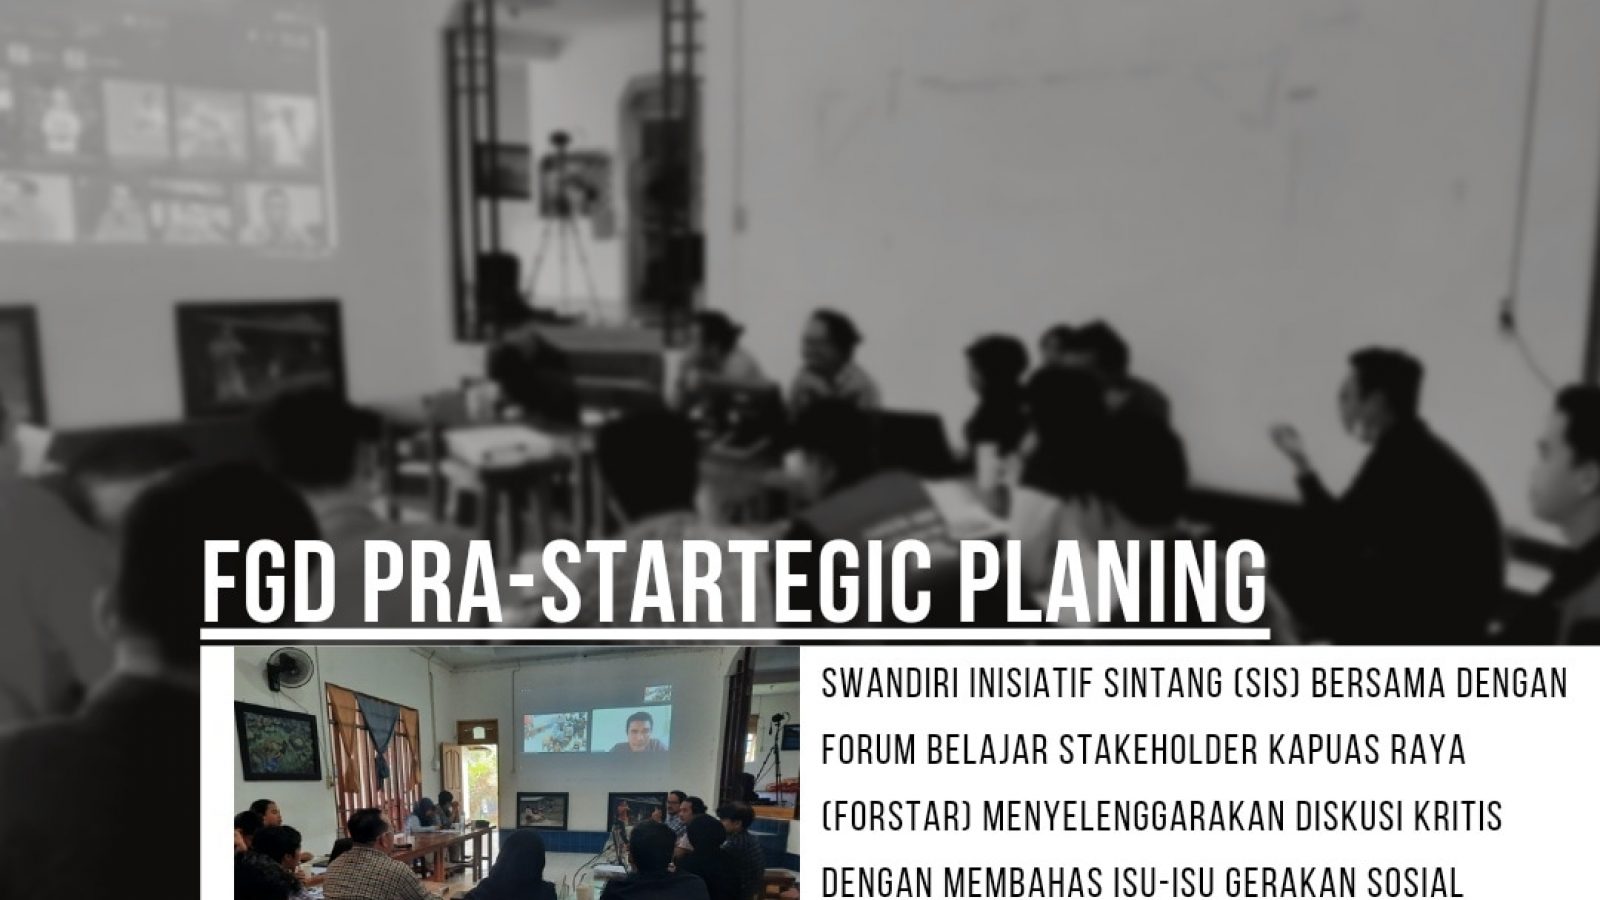 FGD Pra-Strategic Planning